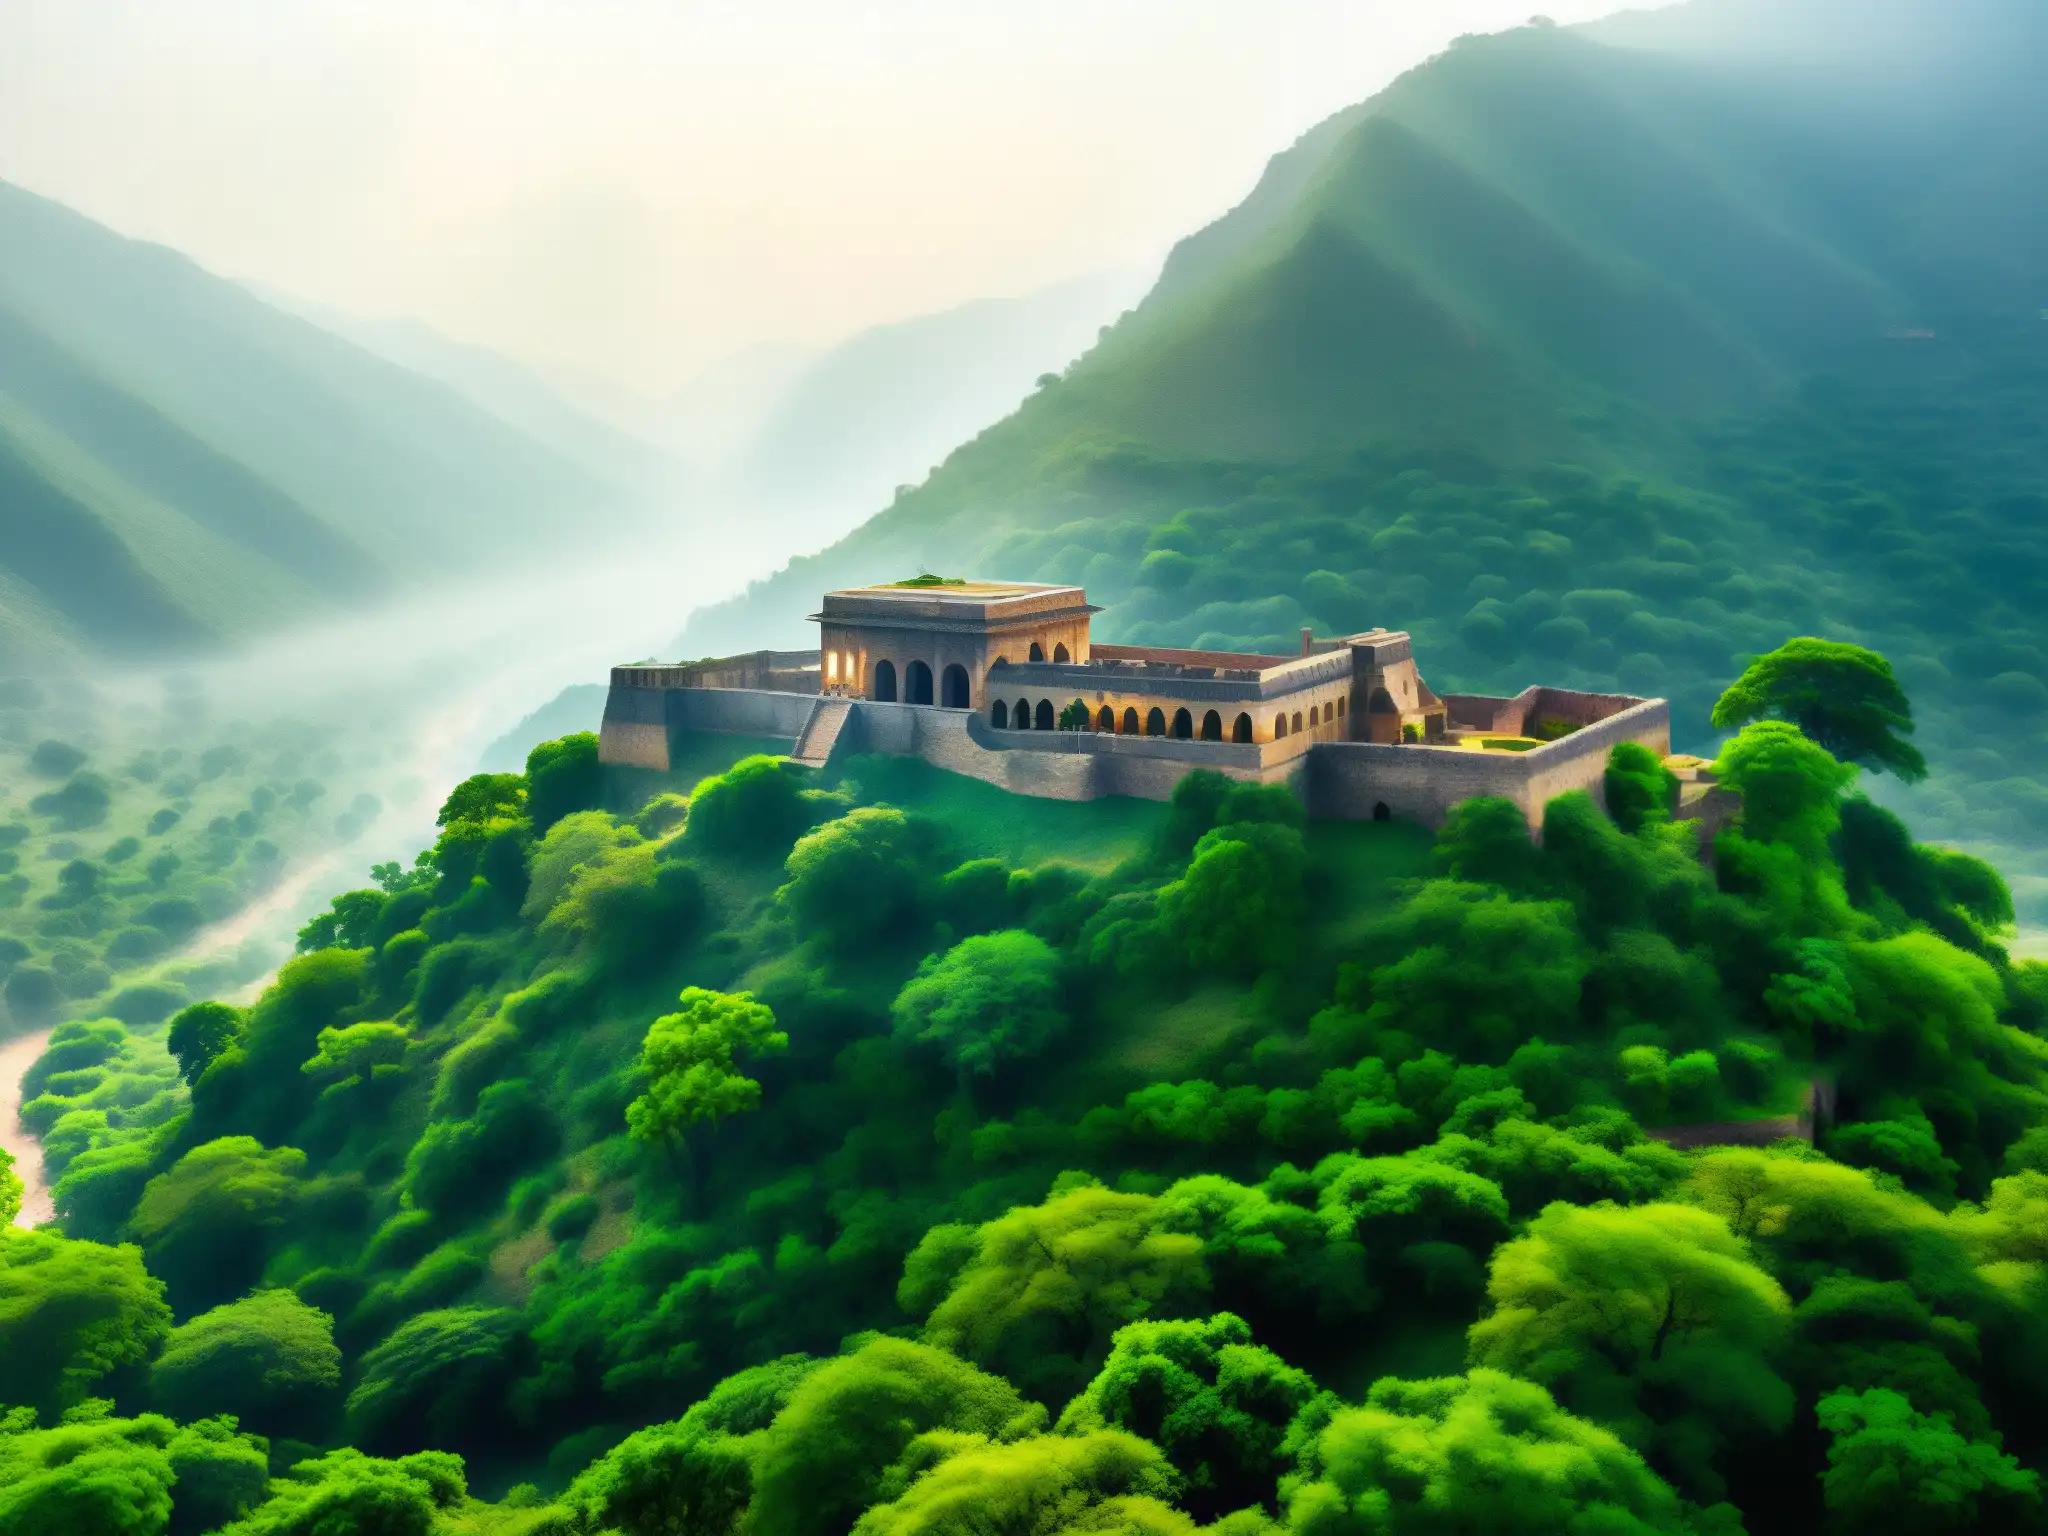 Misterioso palacio Bhangarh: ruinas antiguas envueltas en neblina y misterio, con un aura enigmática